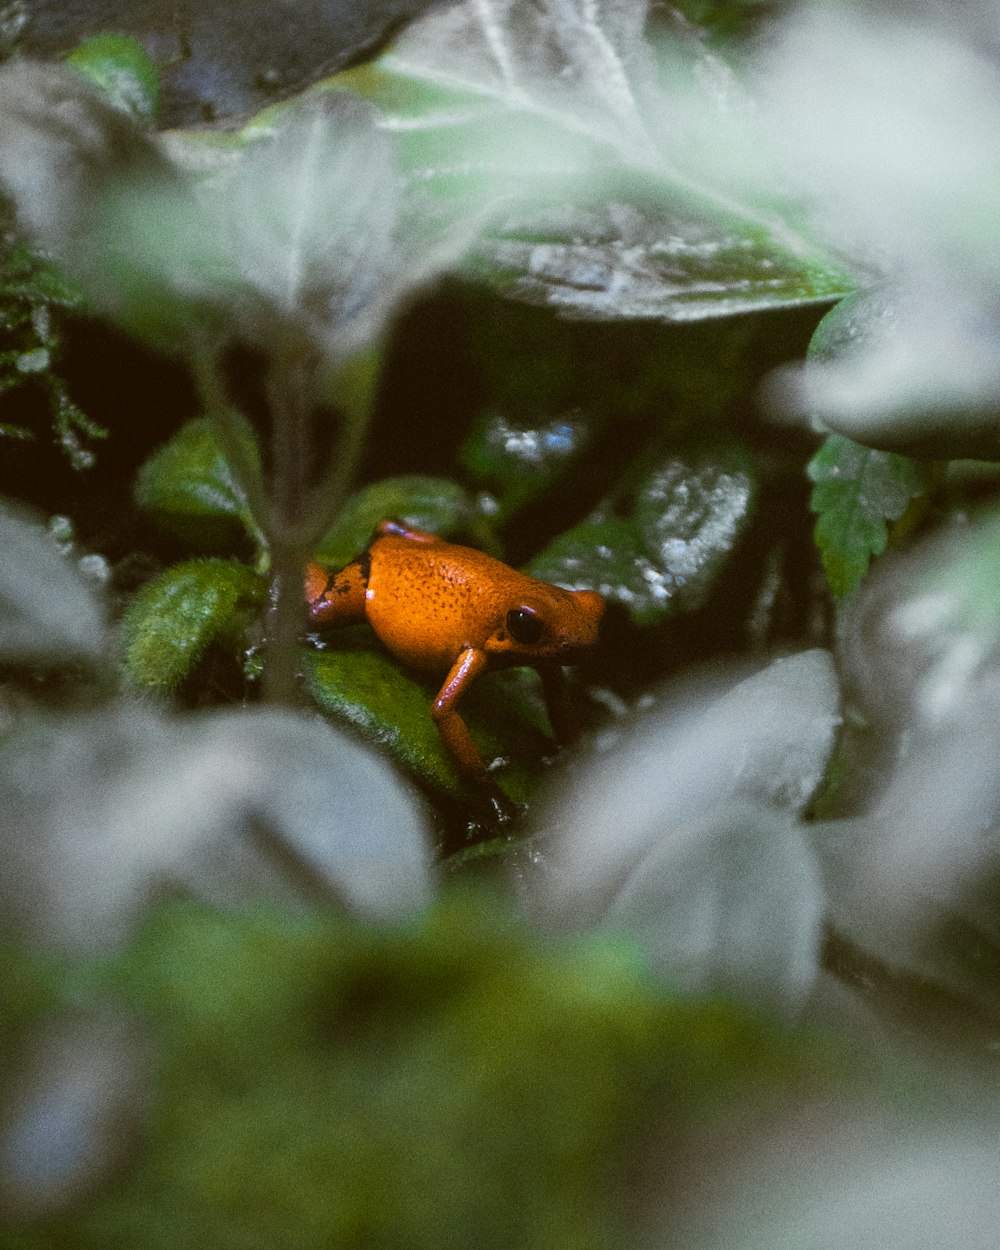 Ein kleiner orangefarbener Frosch sitzt auf einer grünen Pflanze